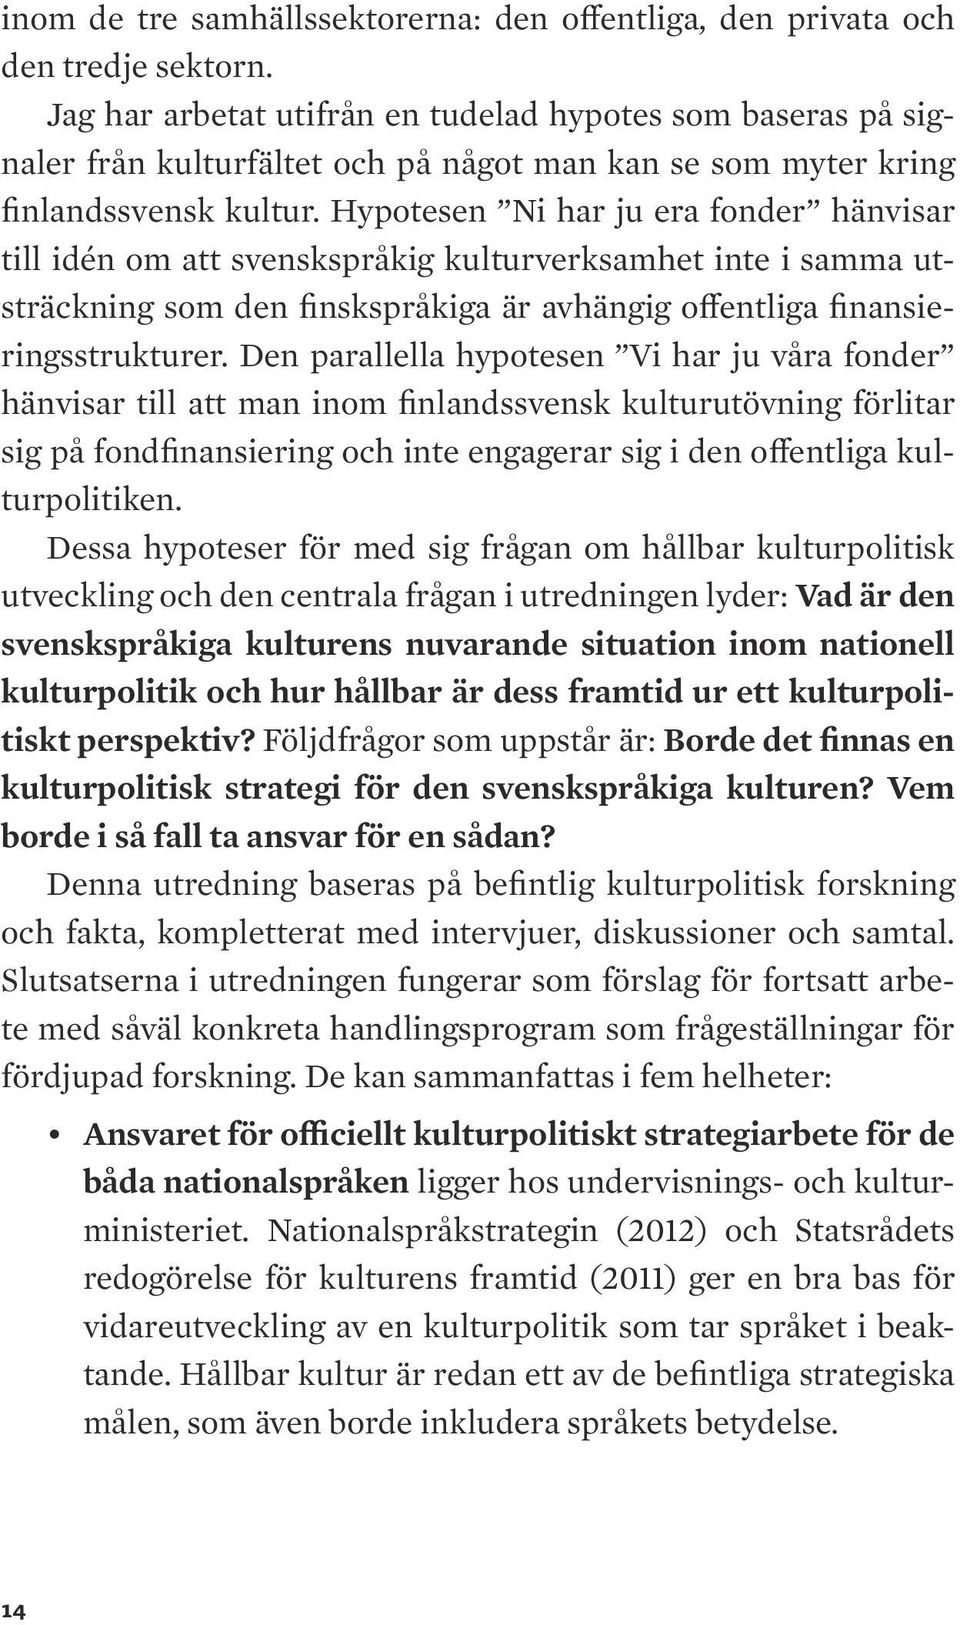 Hypotesen Ni har ju era fonder hänvisar till idén om att svenskspråkig kulturverksamhet inte i samma utsträckning som den finskspråkiga är avhängig offentliga finansieringsstrukturer.